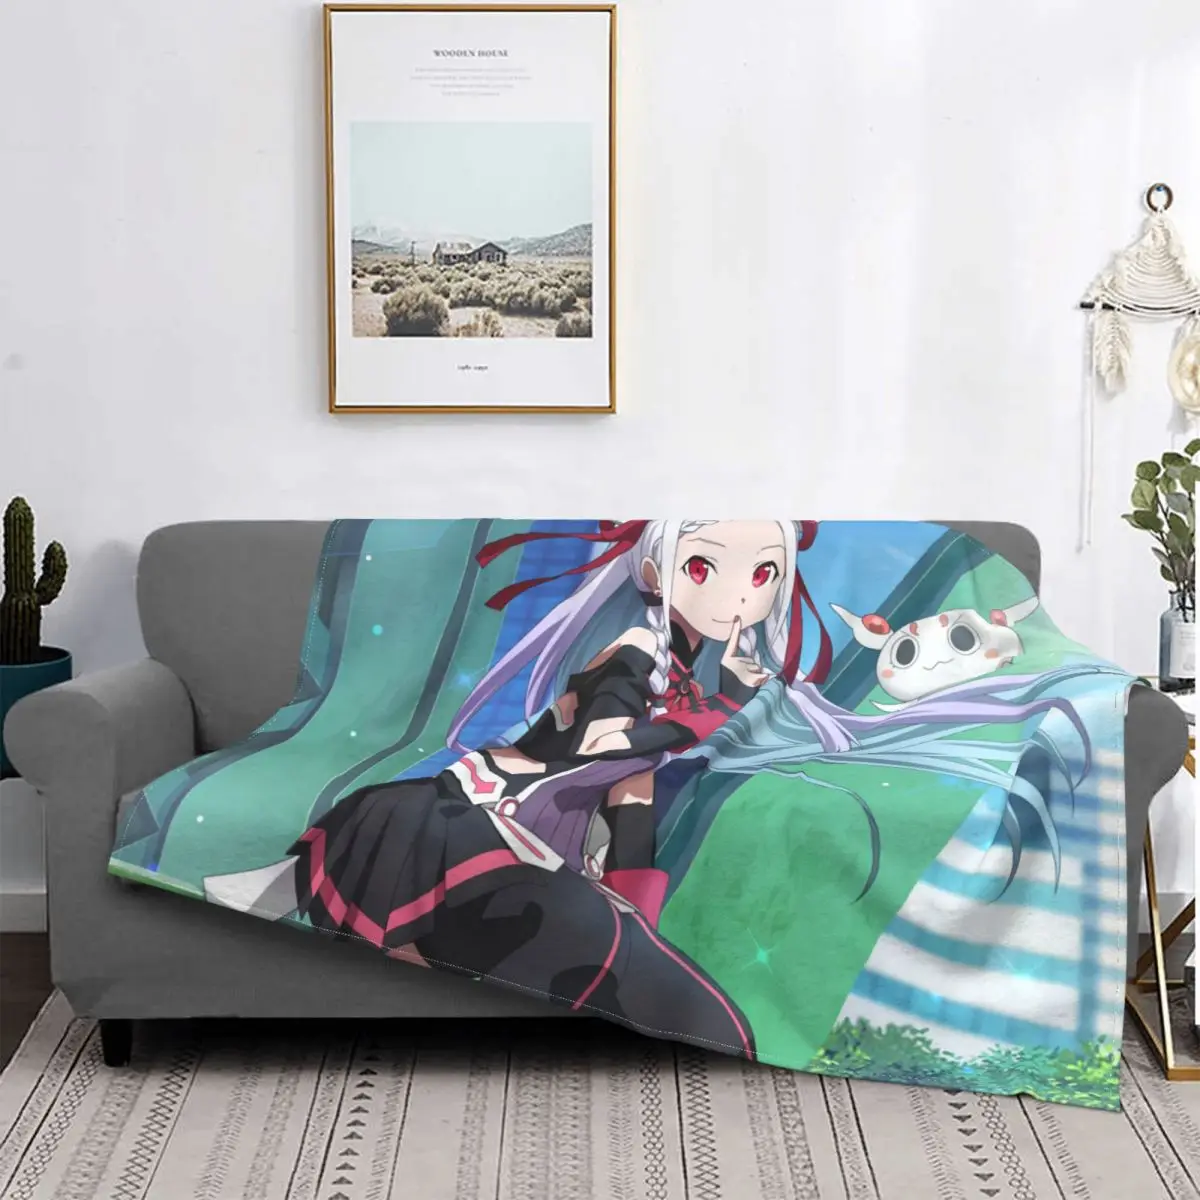 

Меч искусство онлайн Kirigaya Kazuto одеяла для подростков из аниме коралловый флис семейная спальня постельное белье диван покрывало